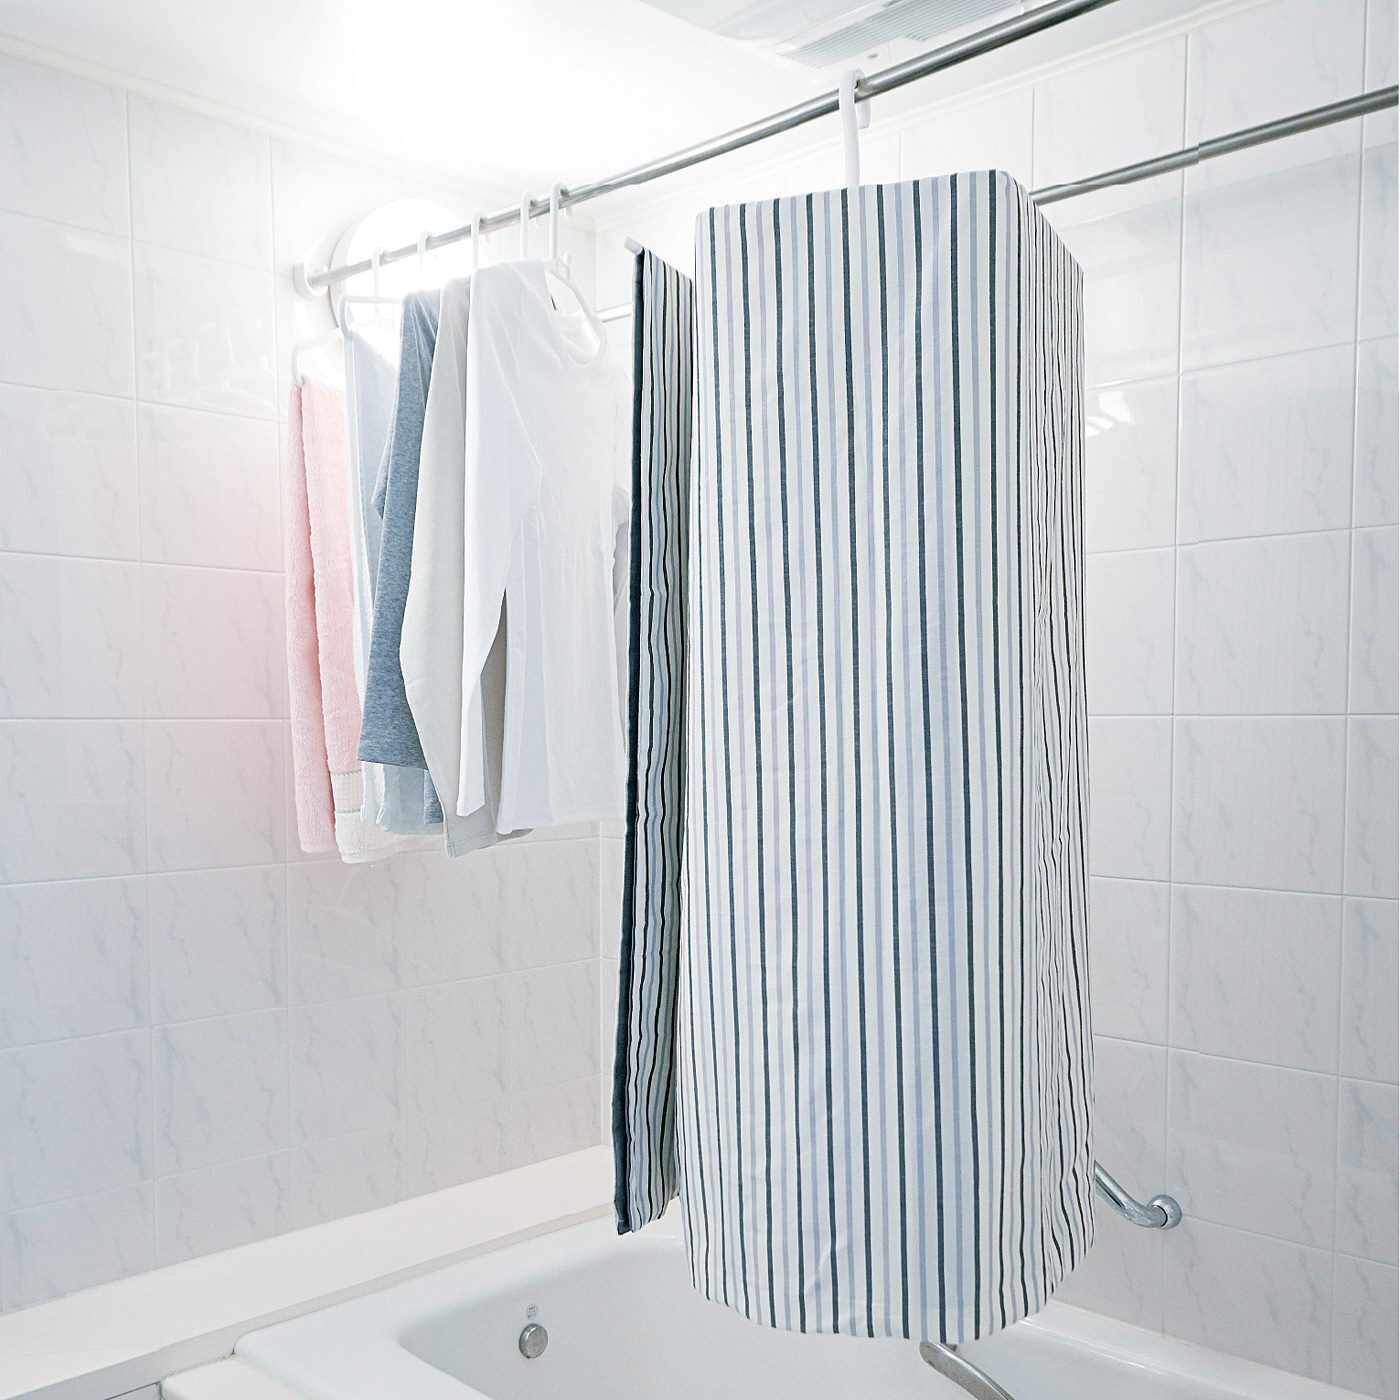 フェリシモの雑貨Kraso|くるくる通すだけでシーツやバスタオルを省スペースで干せるラウンドハンガーの会|浴室や室内干しのスペース効率が大幅にアップ。